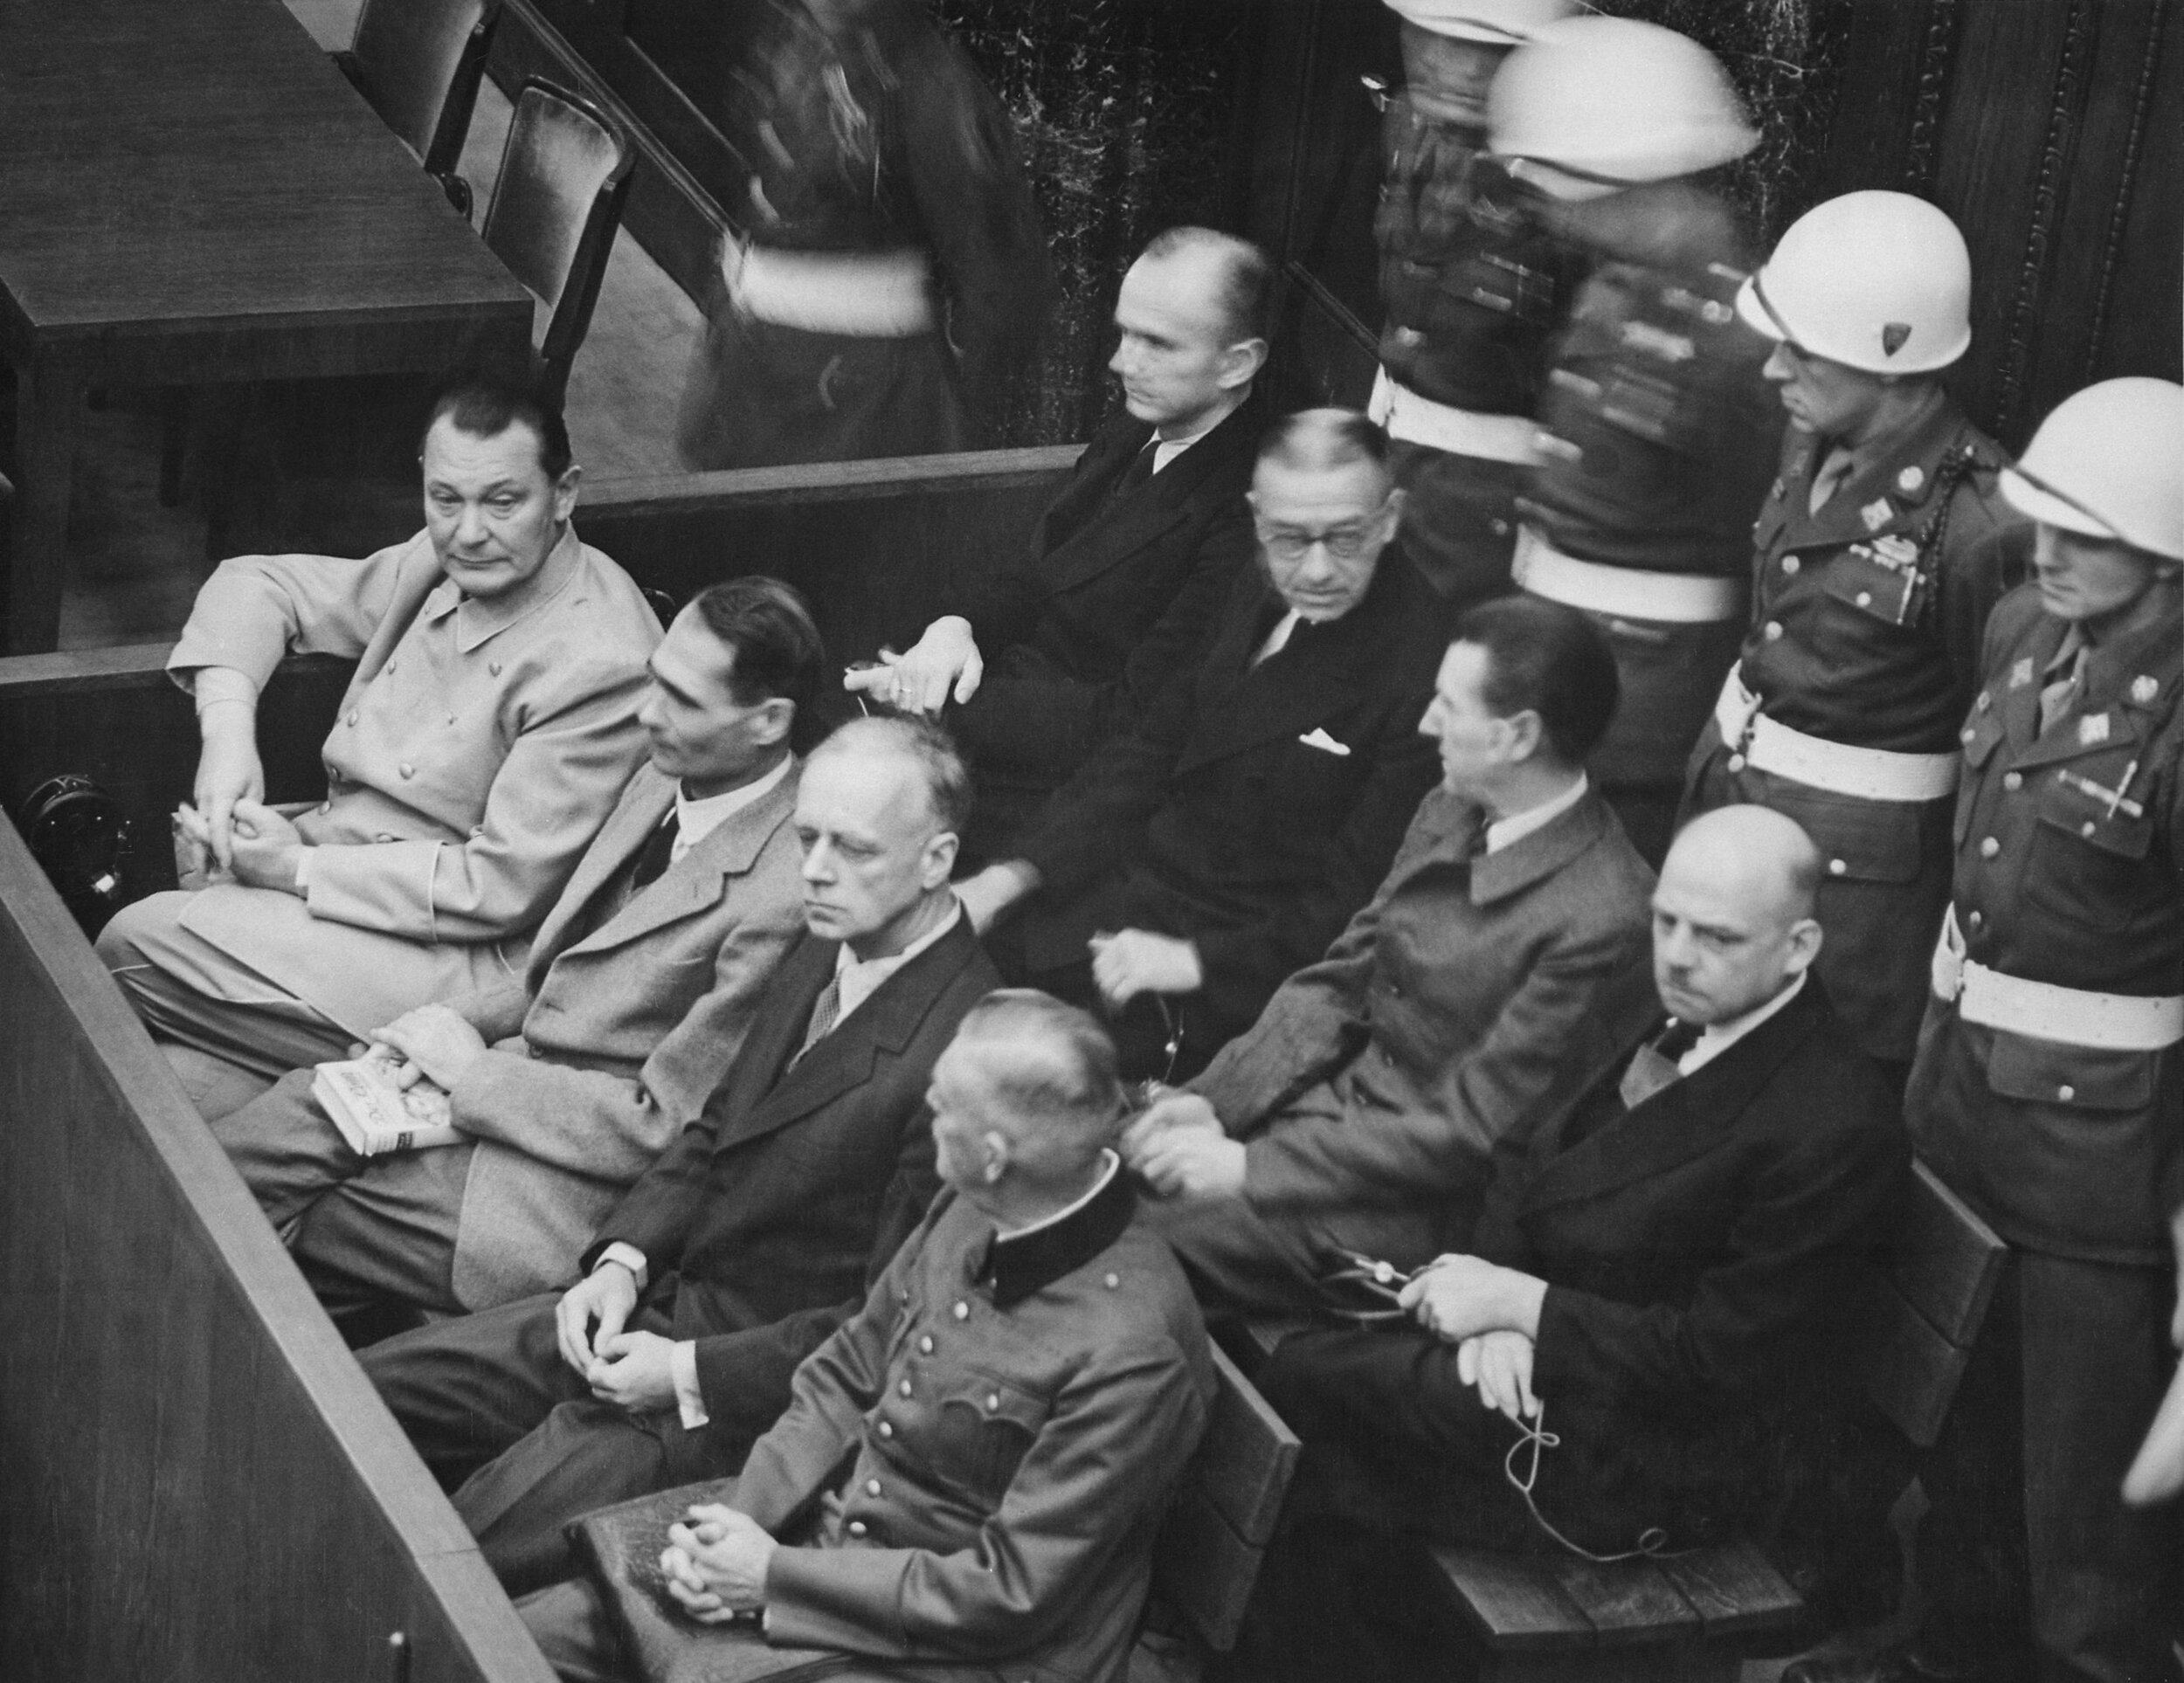 PICTURED: Nuremberg Trials. Defendants in their dock, circa 1945-1946. (in front row, from left to right): Hermann Göring, Rudolf Heß, Joachim von Ribbentrop, Wilhelm Keitel (in second row, from left to right): Karl Dönitz, Erich Raeder, Baldur von …